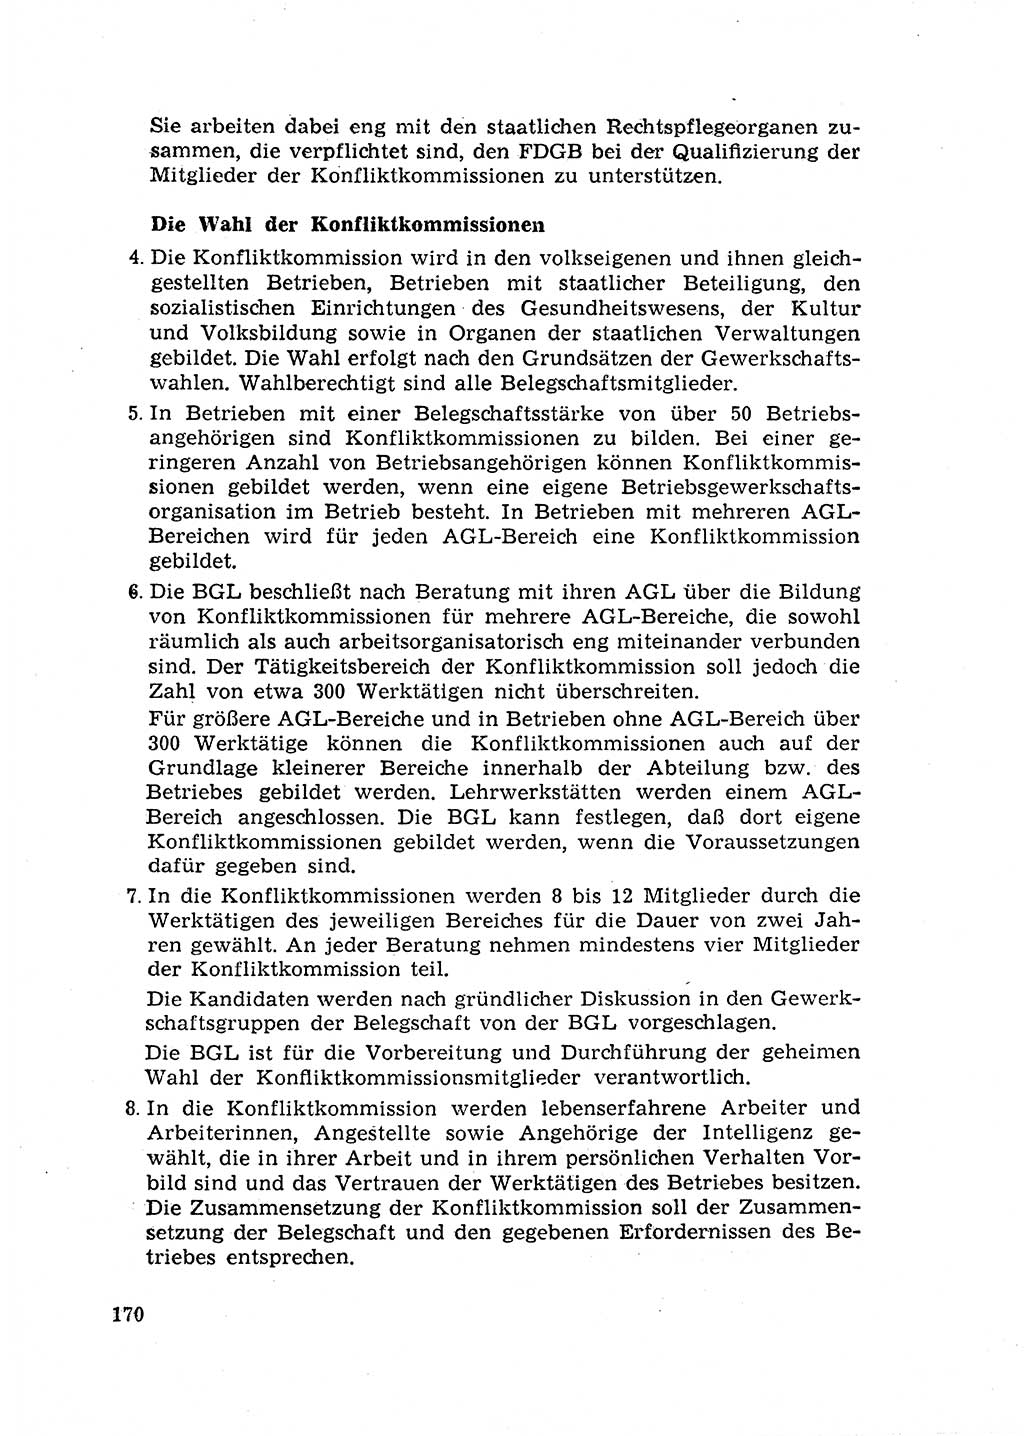 Rechtspflegeerlaß [Deutsche Demokratische Republik (DDR)] 1963, Seite 170 (R.-Pfl.-Erl. DDR 1963, S. 170)